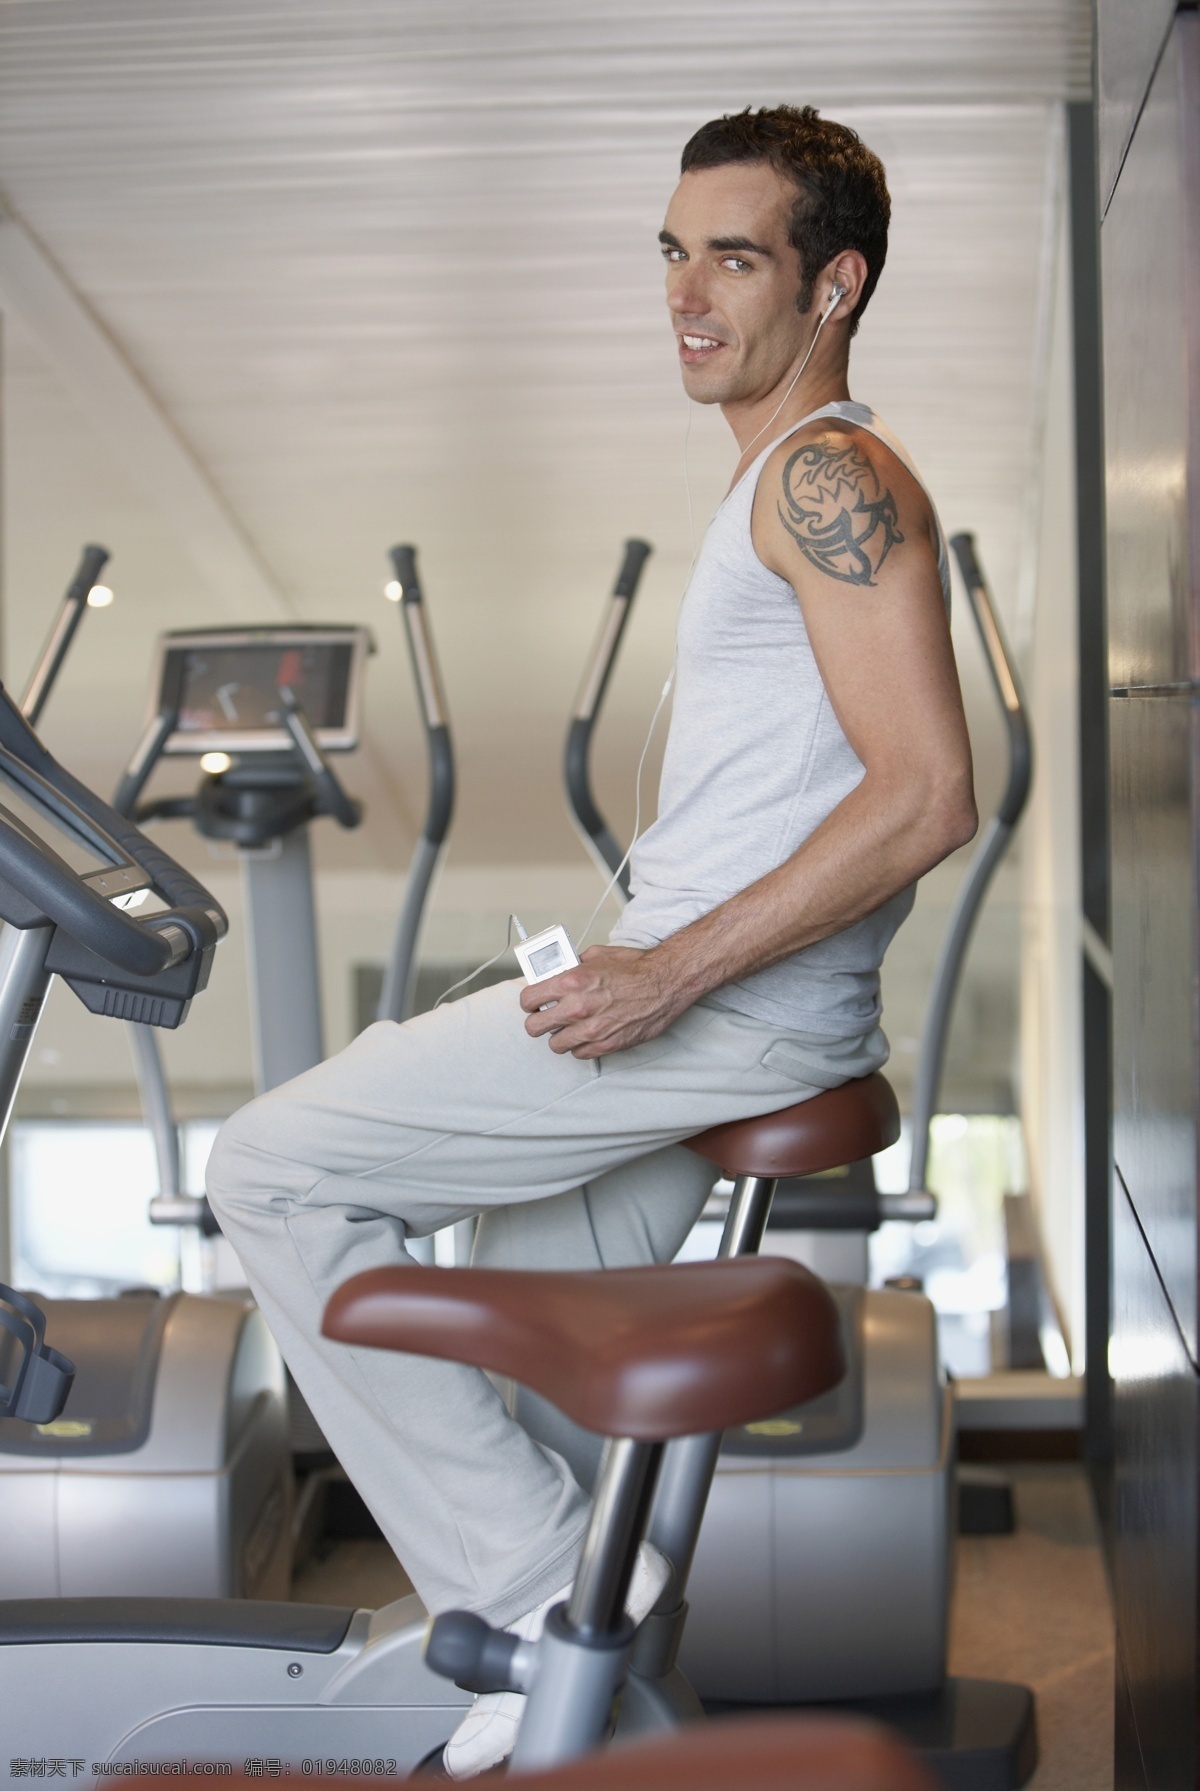 健身房 里 健身 男人 外国男性 男性 时尚 性感 运动 健美 瘦身 健身室 健身器材 生活人物 人物图片